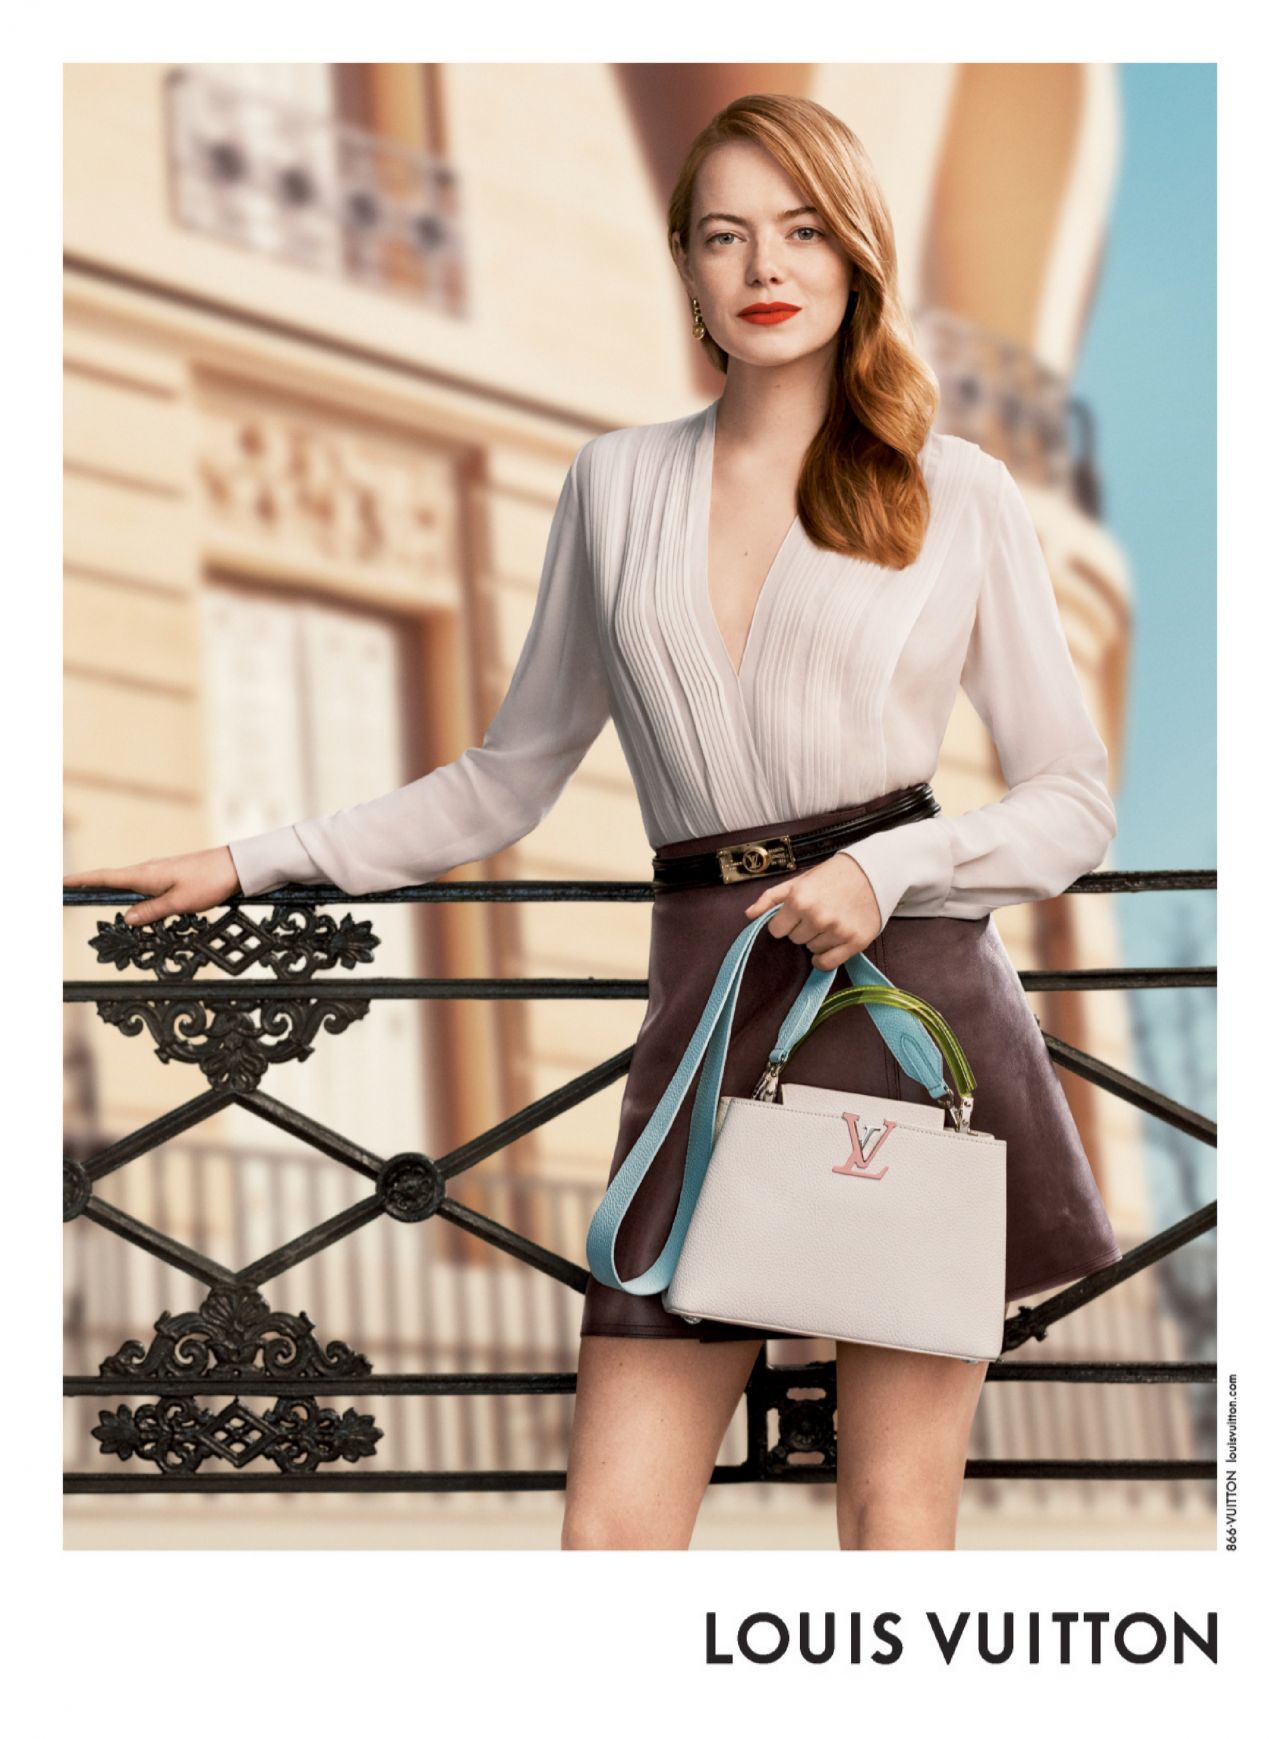 Louis Vuitton - Emma Stone for Les Parfums Louis Vuitton. The